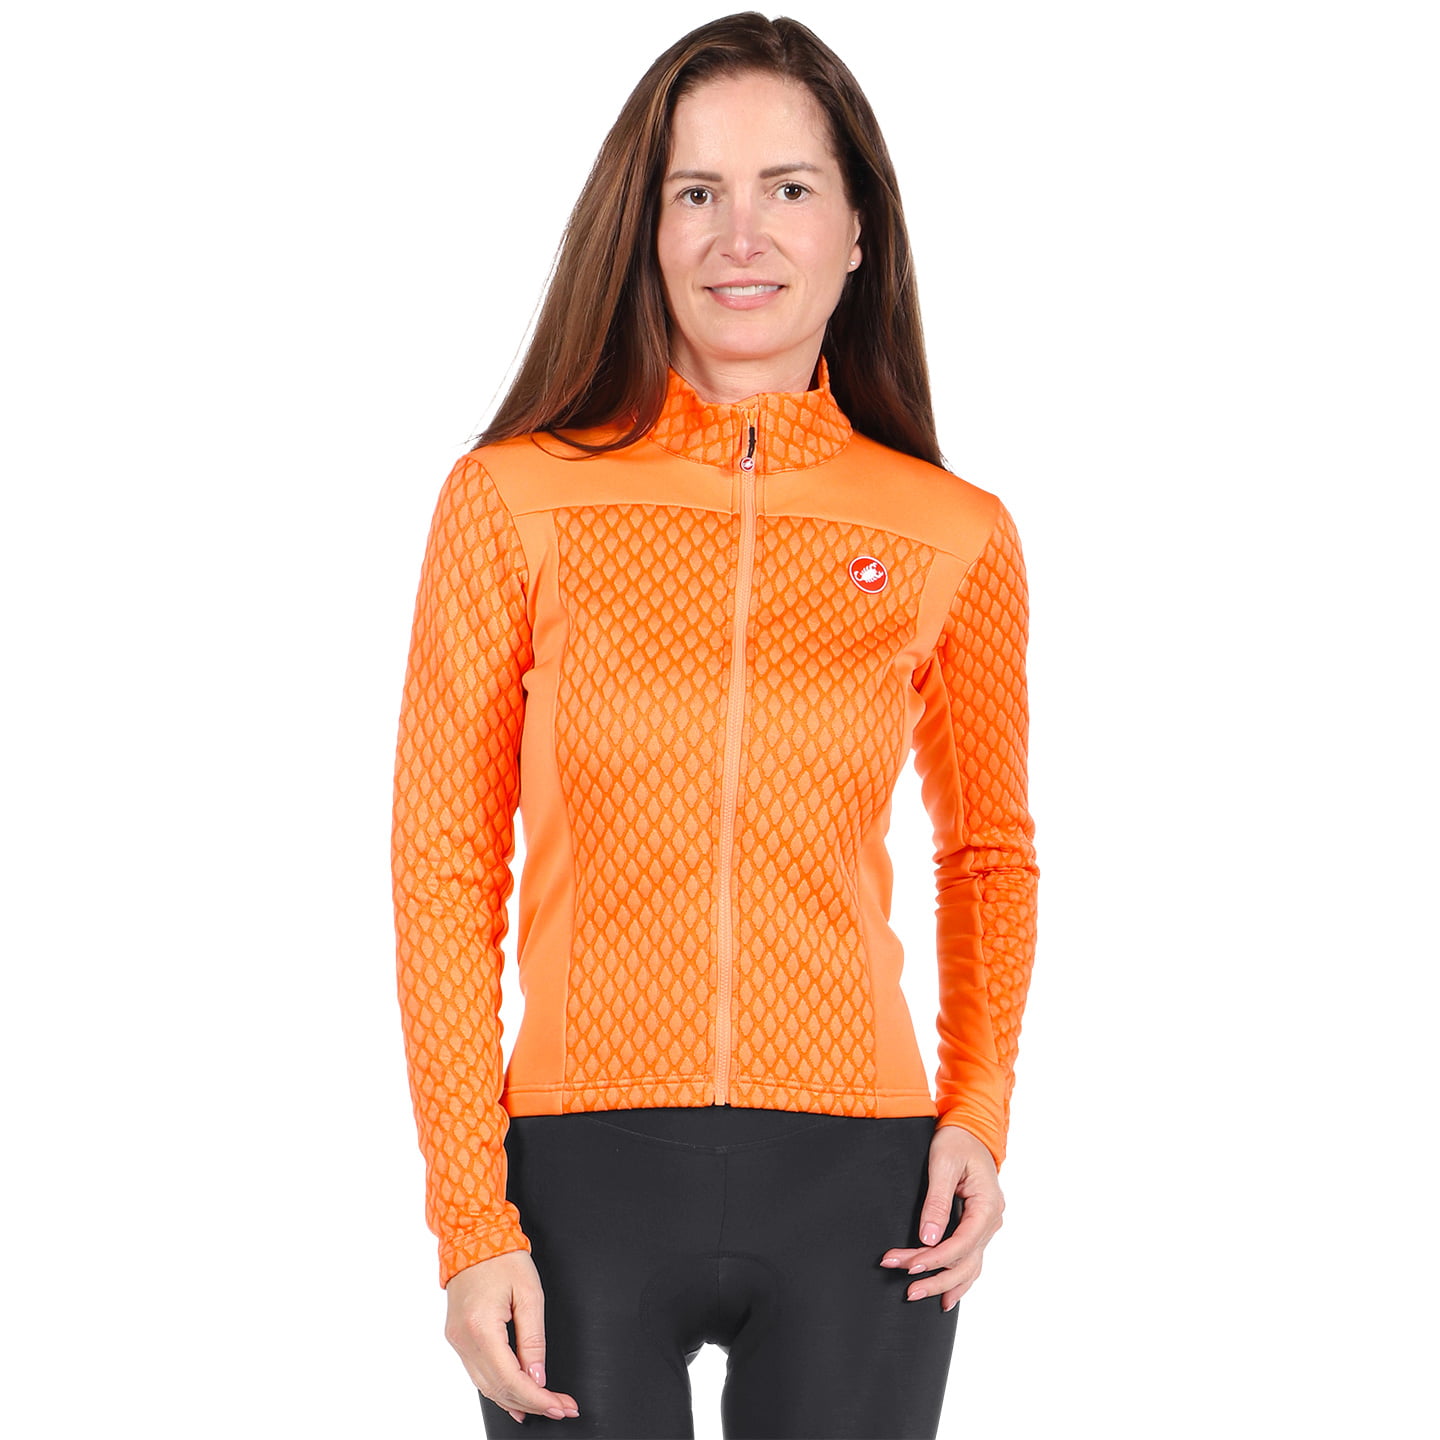 CASTELLI Sfida 2 Women’s Jersey Jacket Jersey / Jacket, size M, Cycling jersey, Cycle clothing